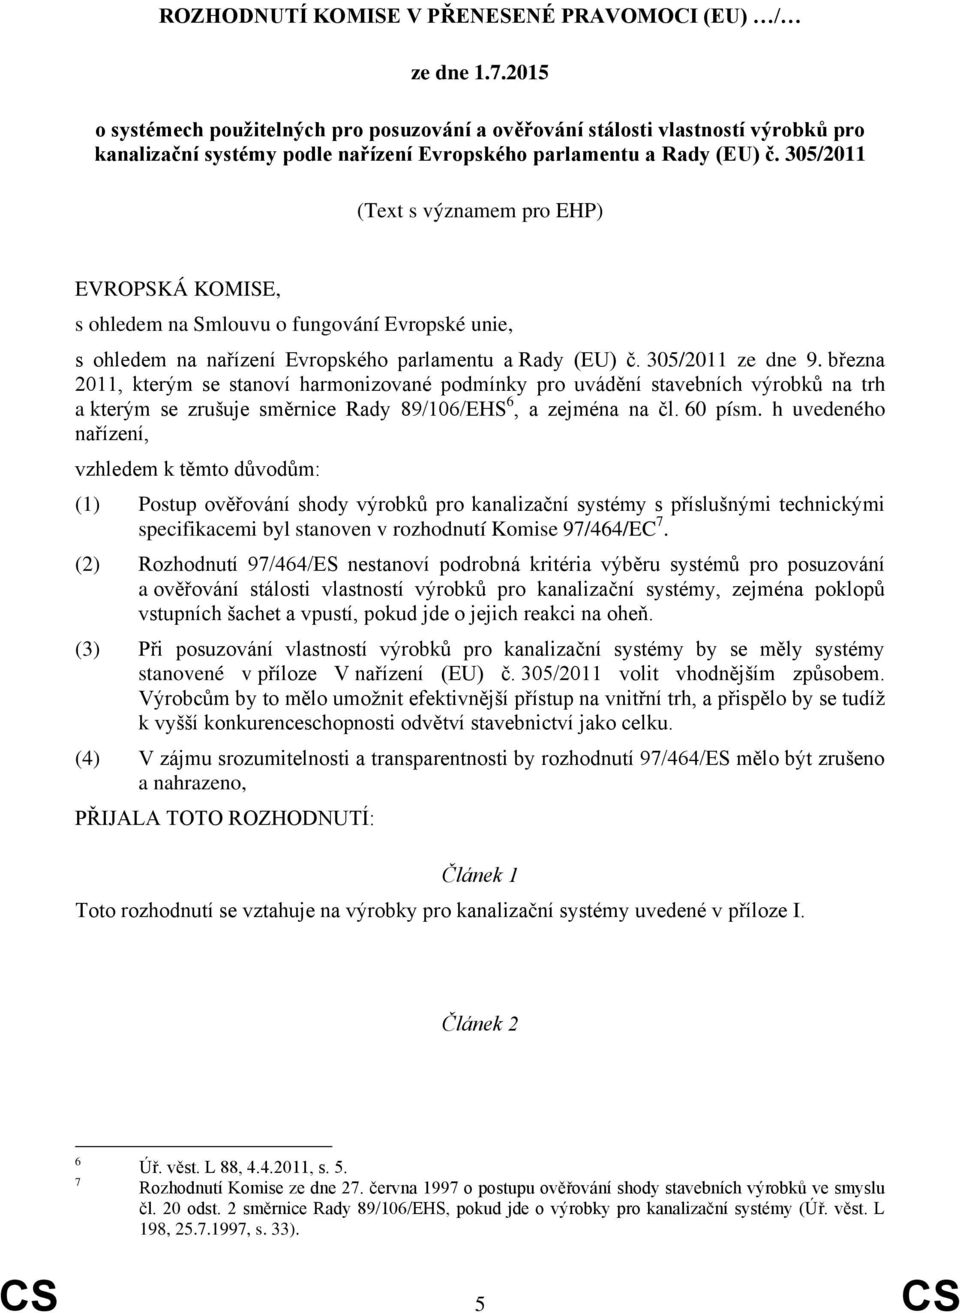 305/2011 (Text s významem pro EHP) EVROPSKÁ KOMISE, s ohledem na Smlouvu o fungování Evropské unie, s ohledem na nařízení Evropského parlamentu a Rady (EU) č. 305/2011 ze dne 9.